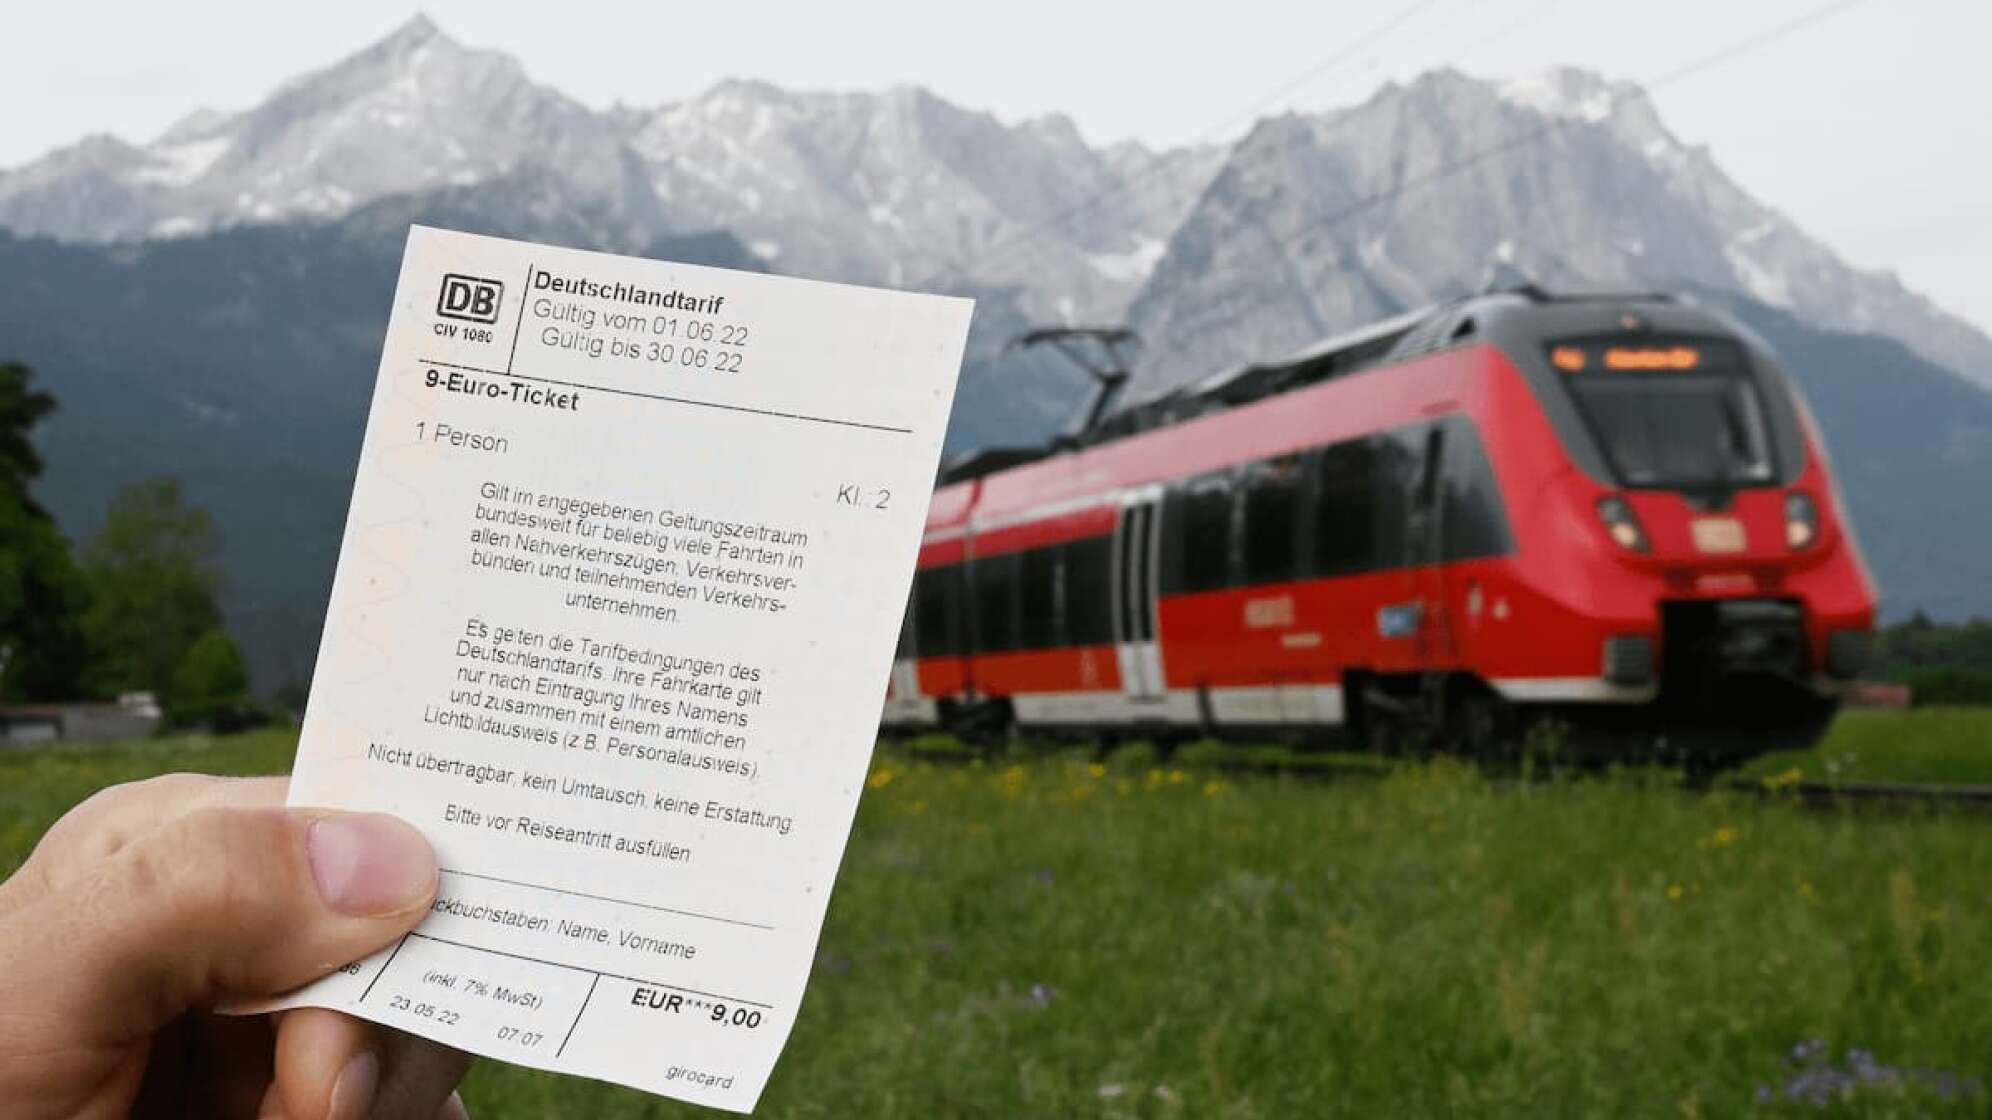 9 EUR Ticket und Deutsche Bahn vor Bergpanorama